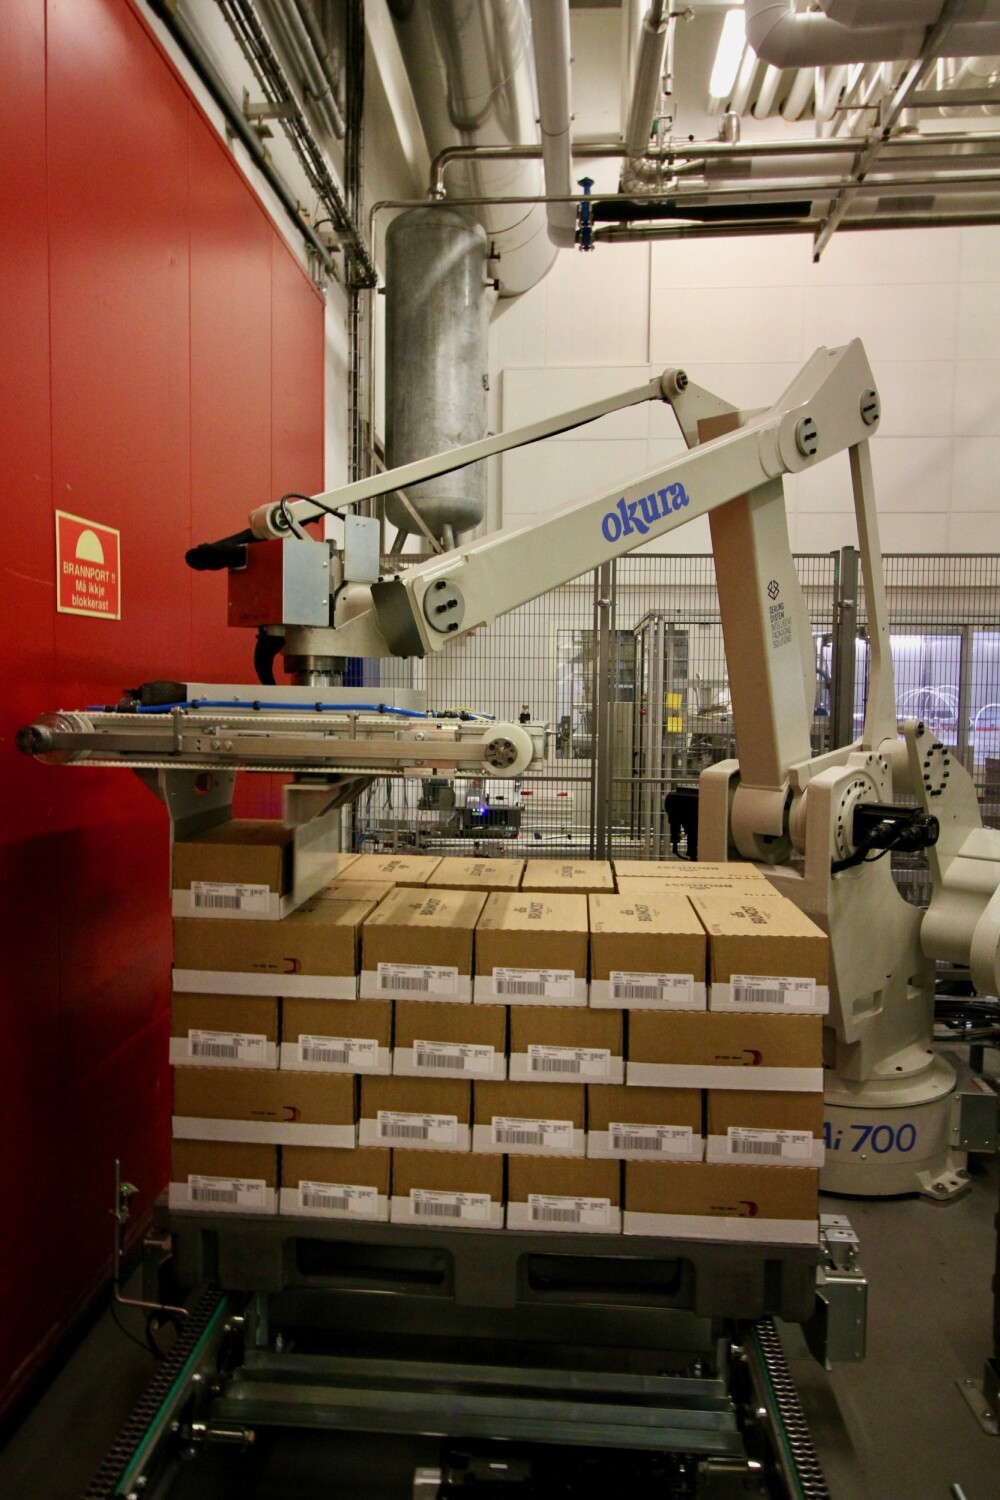 <b>MEKANISK STABLER:</b> Robotene har gjort sitt inntog i brunostproduksjonen. Her er en av dem i full gang med å stable eller palletere ferdigpakkede kasser med Gudbrandsdalsost.